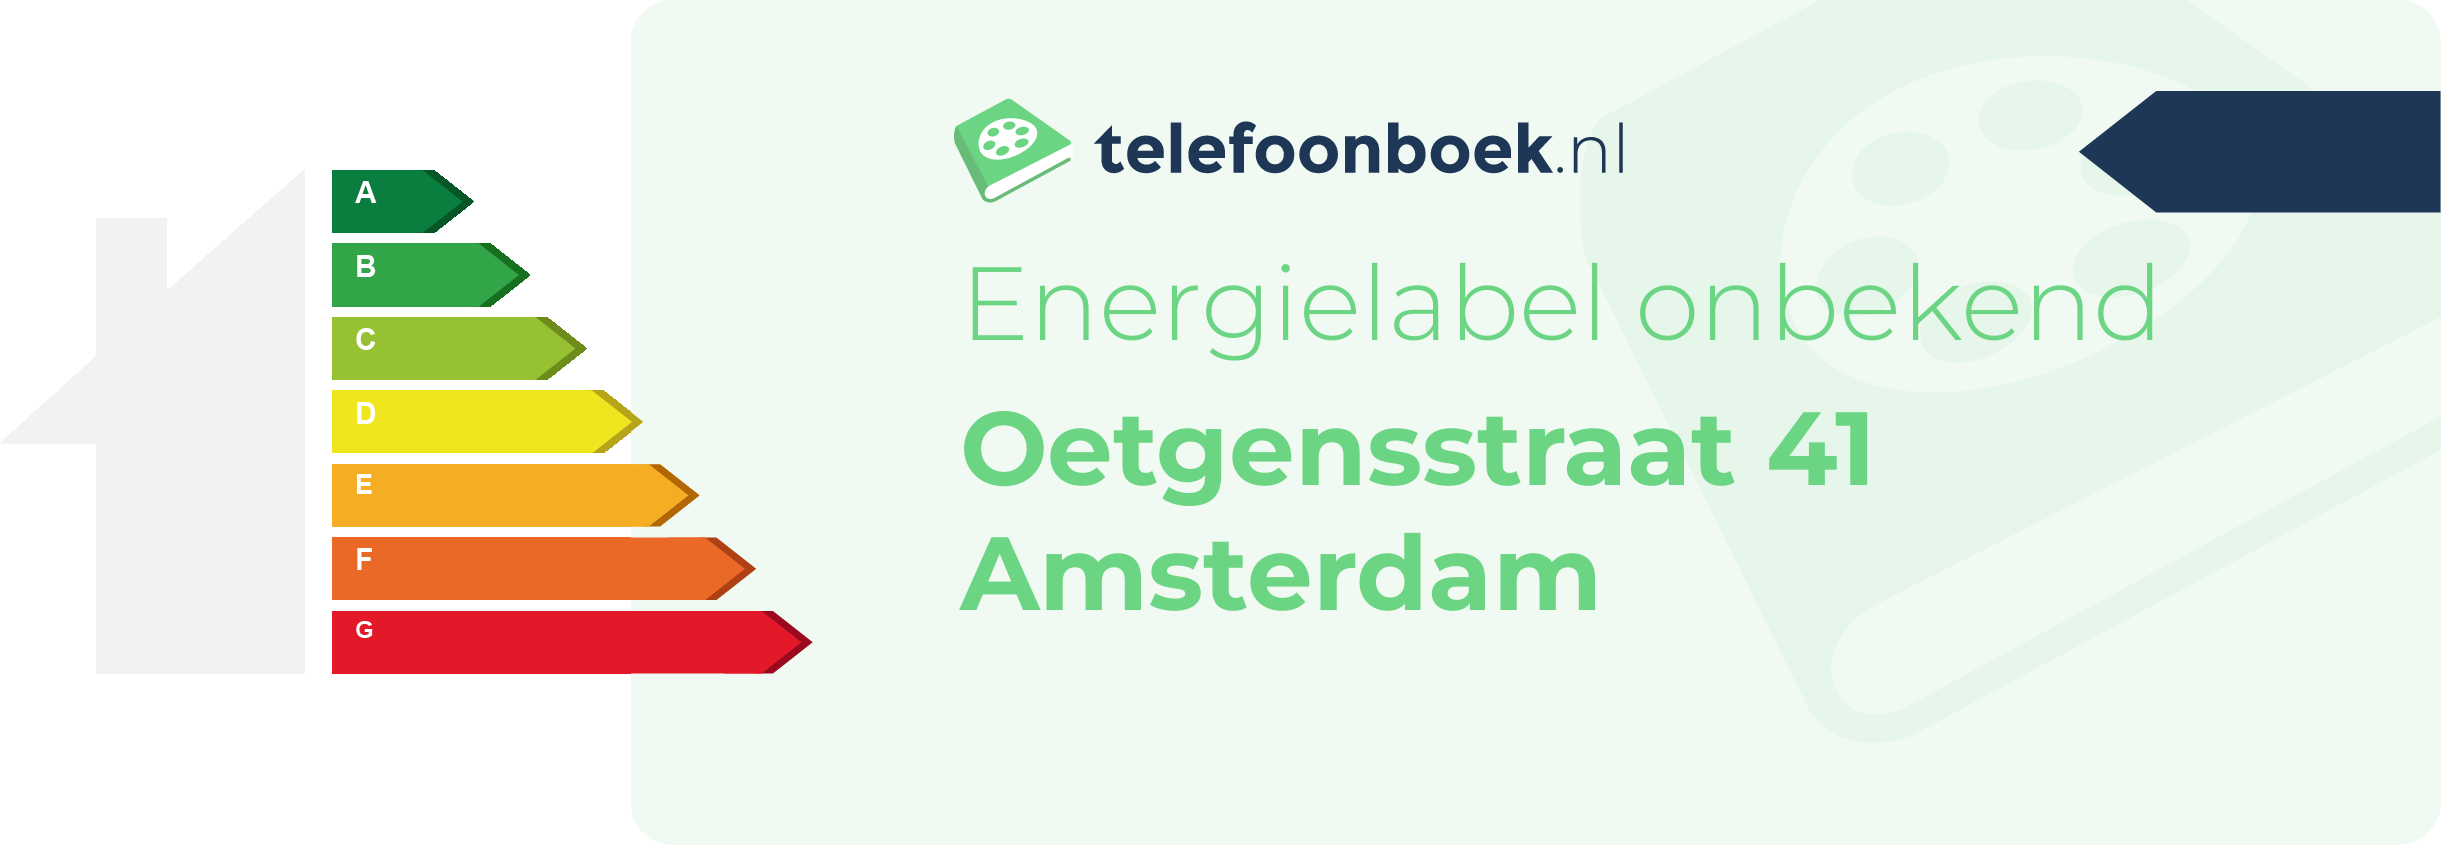 Energielabel Oetgensstraat 41 Amsterdam